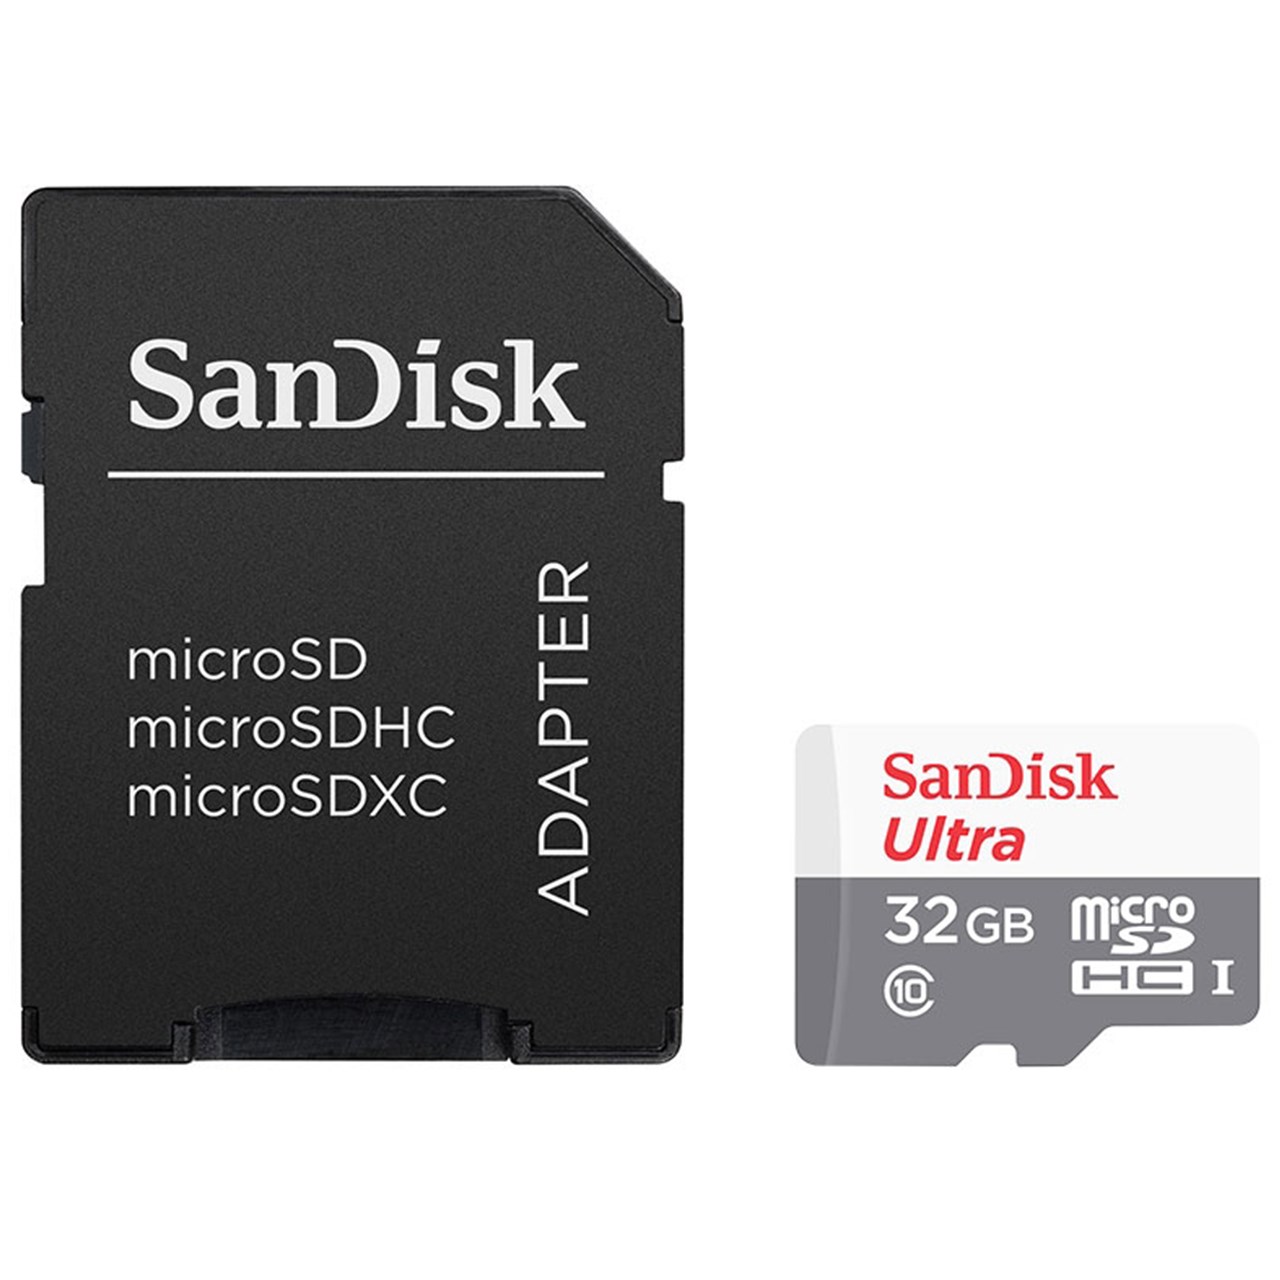 آنباکس کارت حافظه microSDHC مدل Ultra کلاس 10 استاندارد UHS-I U1 سرعت 80MBps 533X همراه با آداپتور SD ظرفیت 32 گیگابایت در تاریخ ۲۰ اردیبهشت ۱۳۹۹